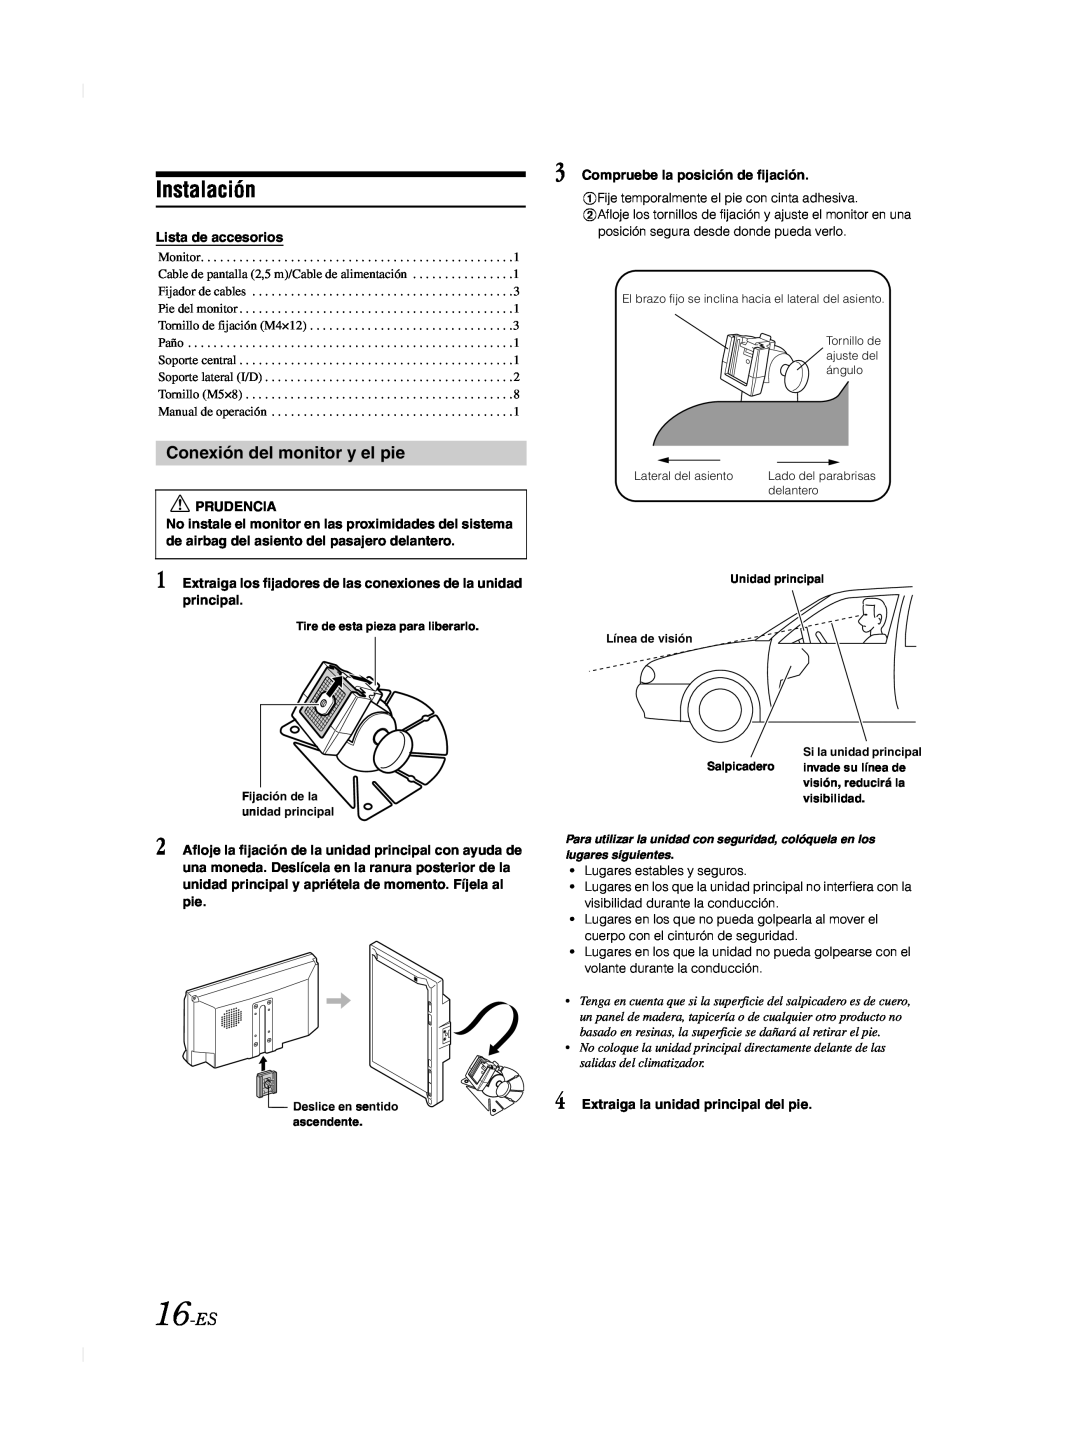 Alpine TME-M740BT owner manual Instalación, Conexión del monitor y el pie, 16-ES, Lista de accesorios, Prudencia 